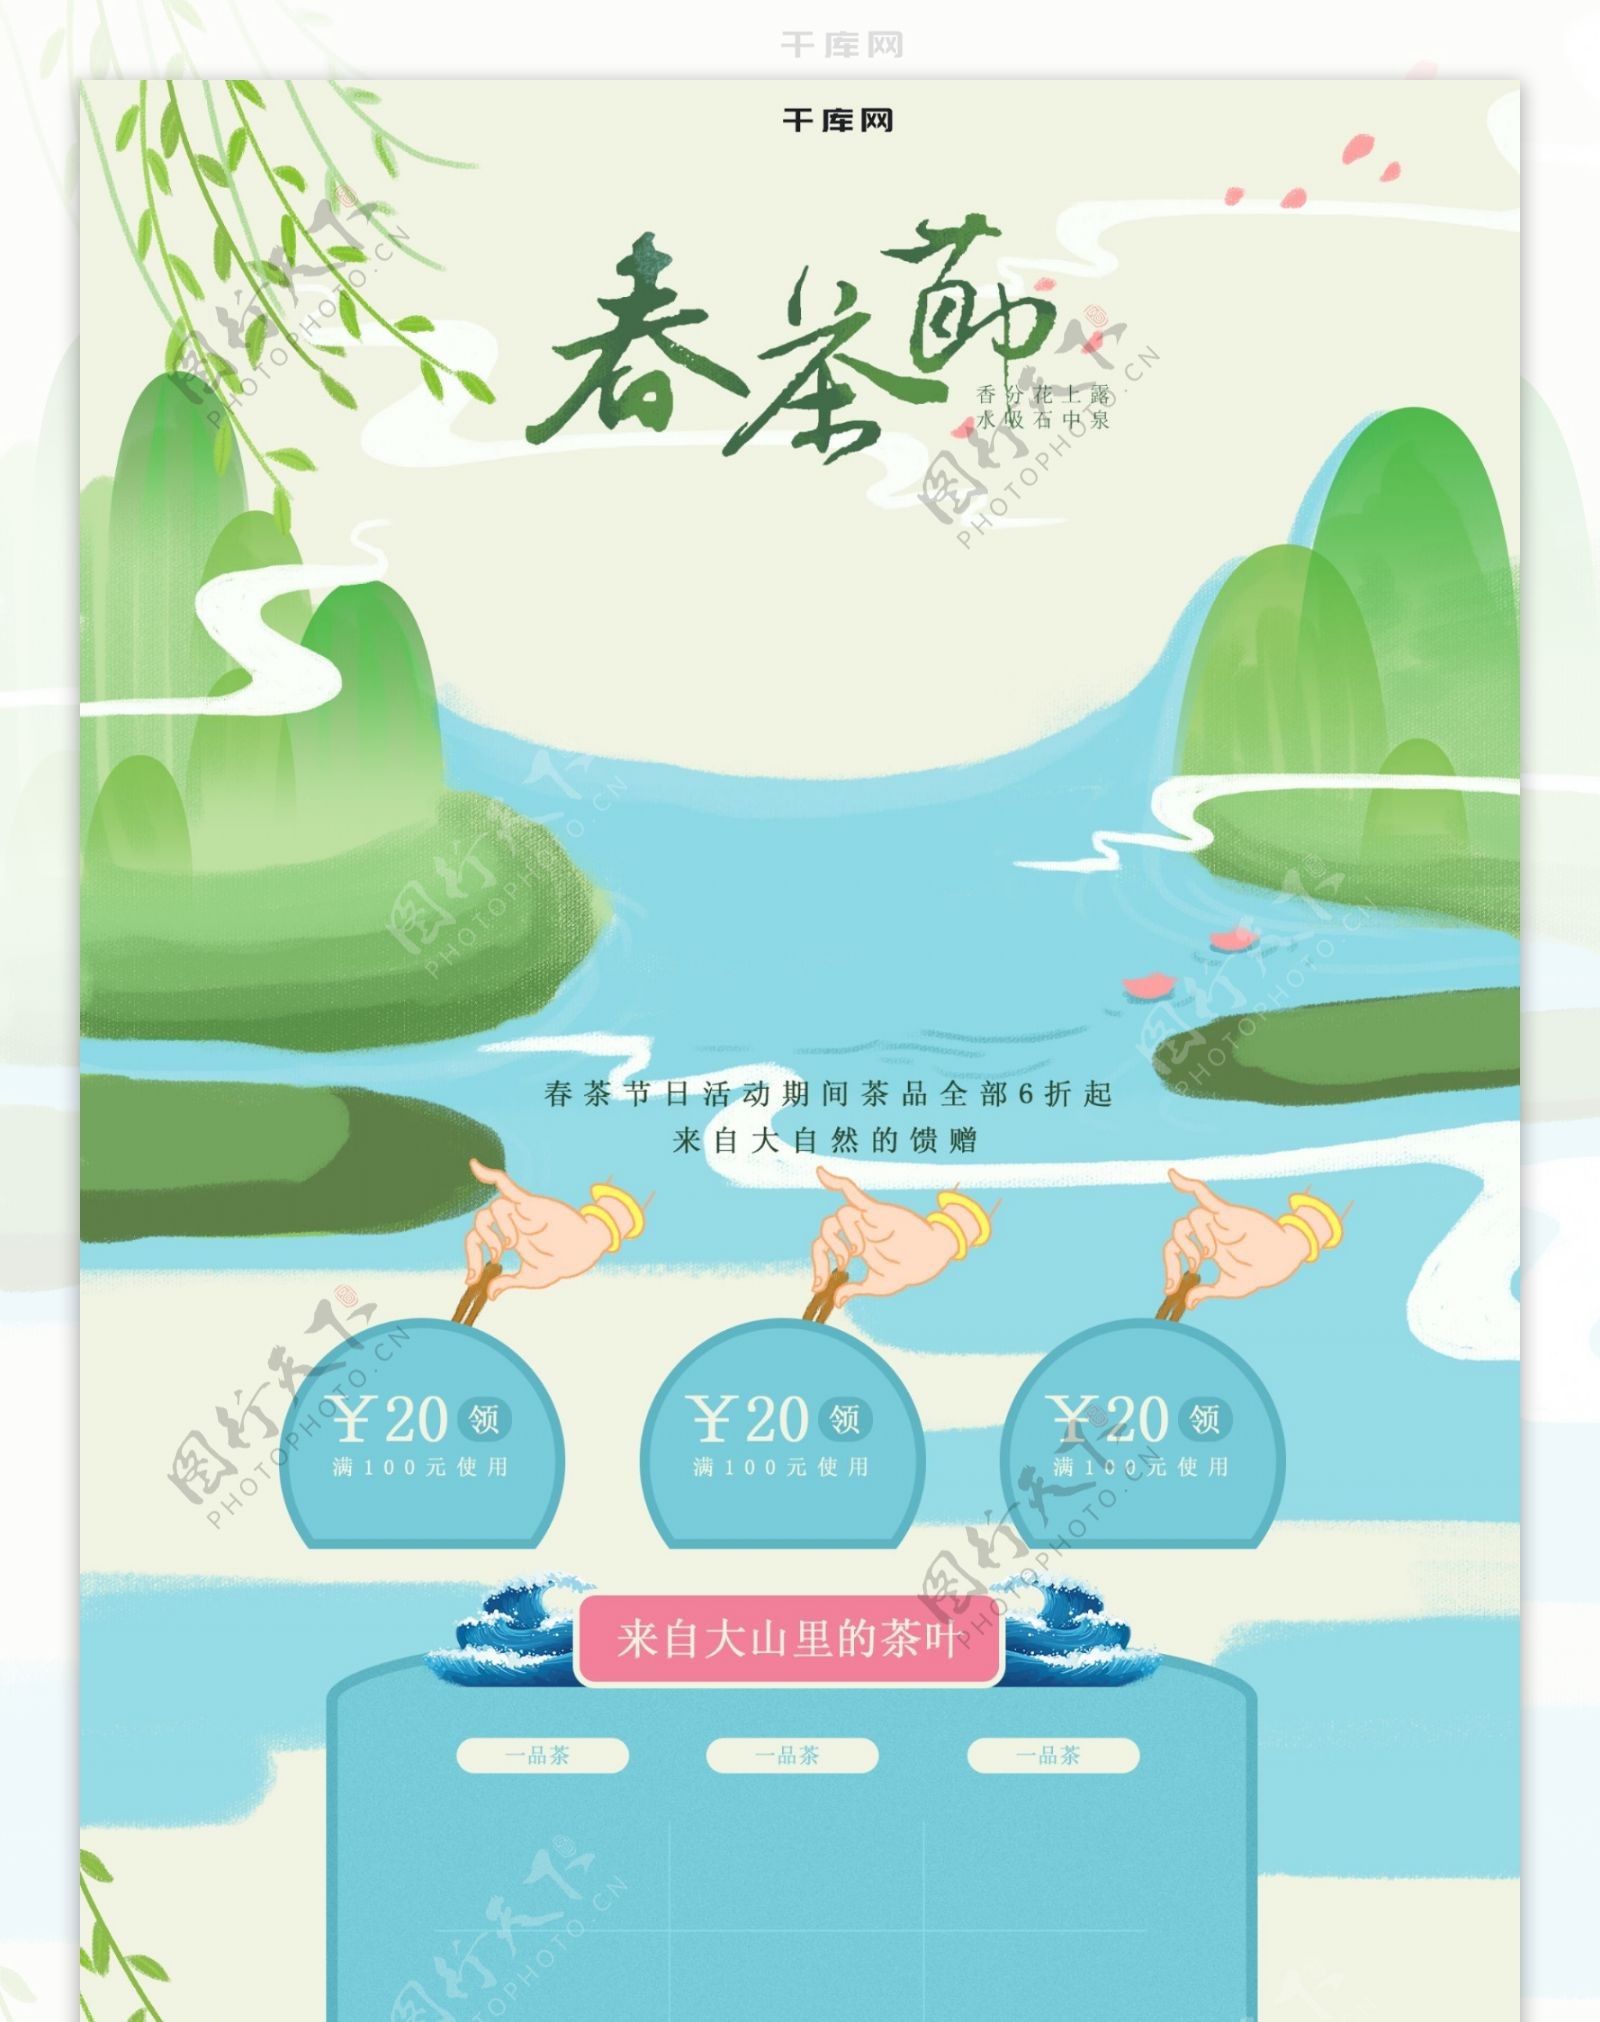 春茶节手绘插画传统古风清新首页模版